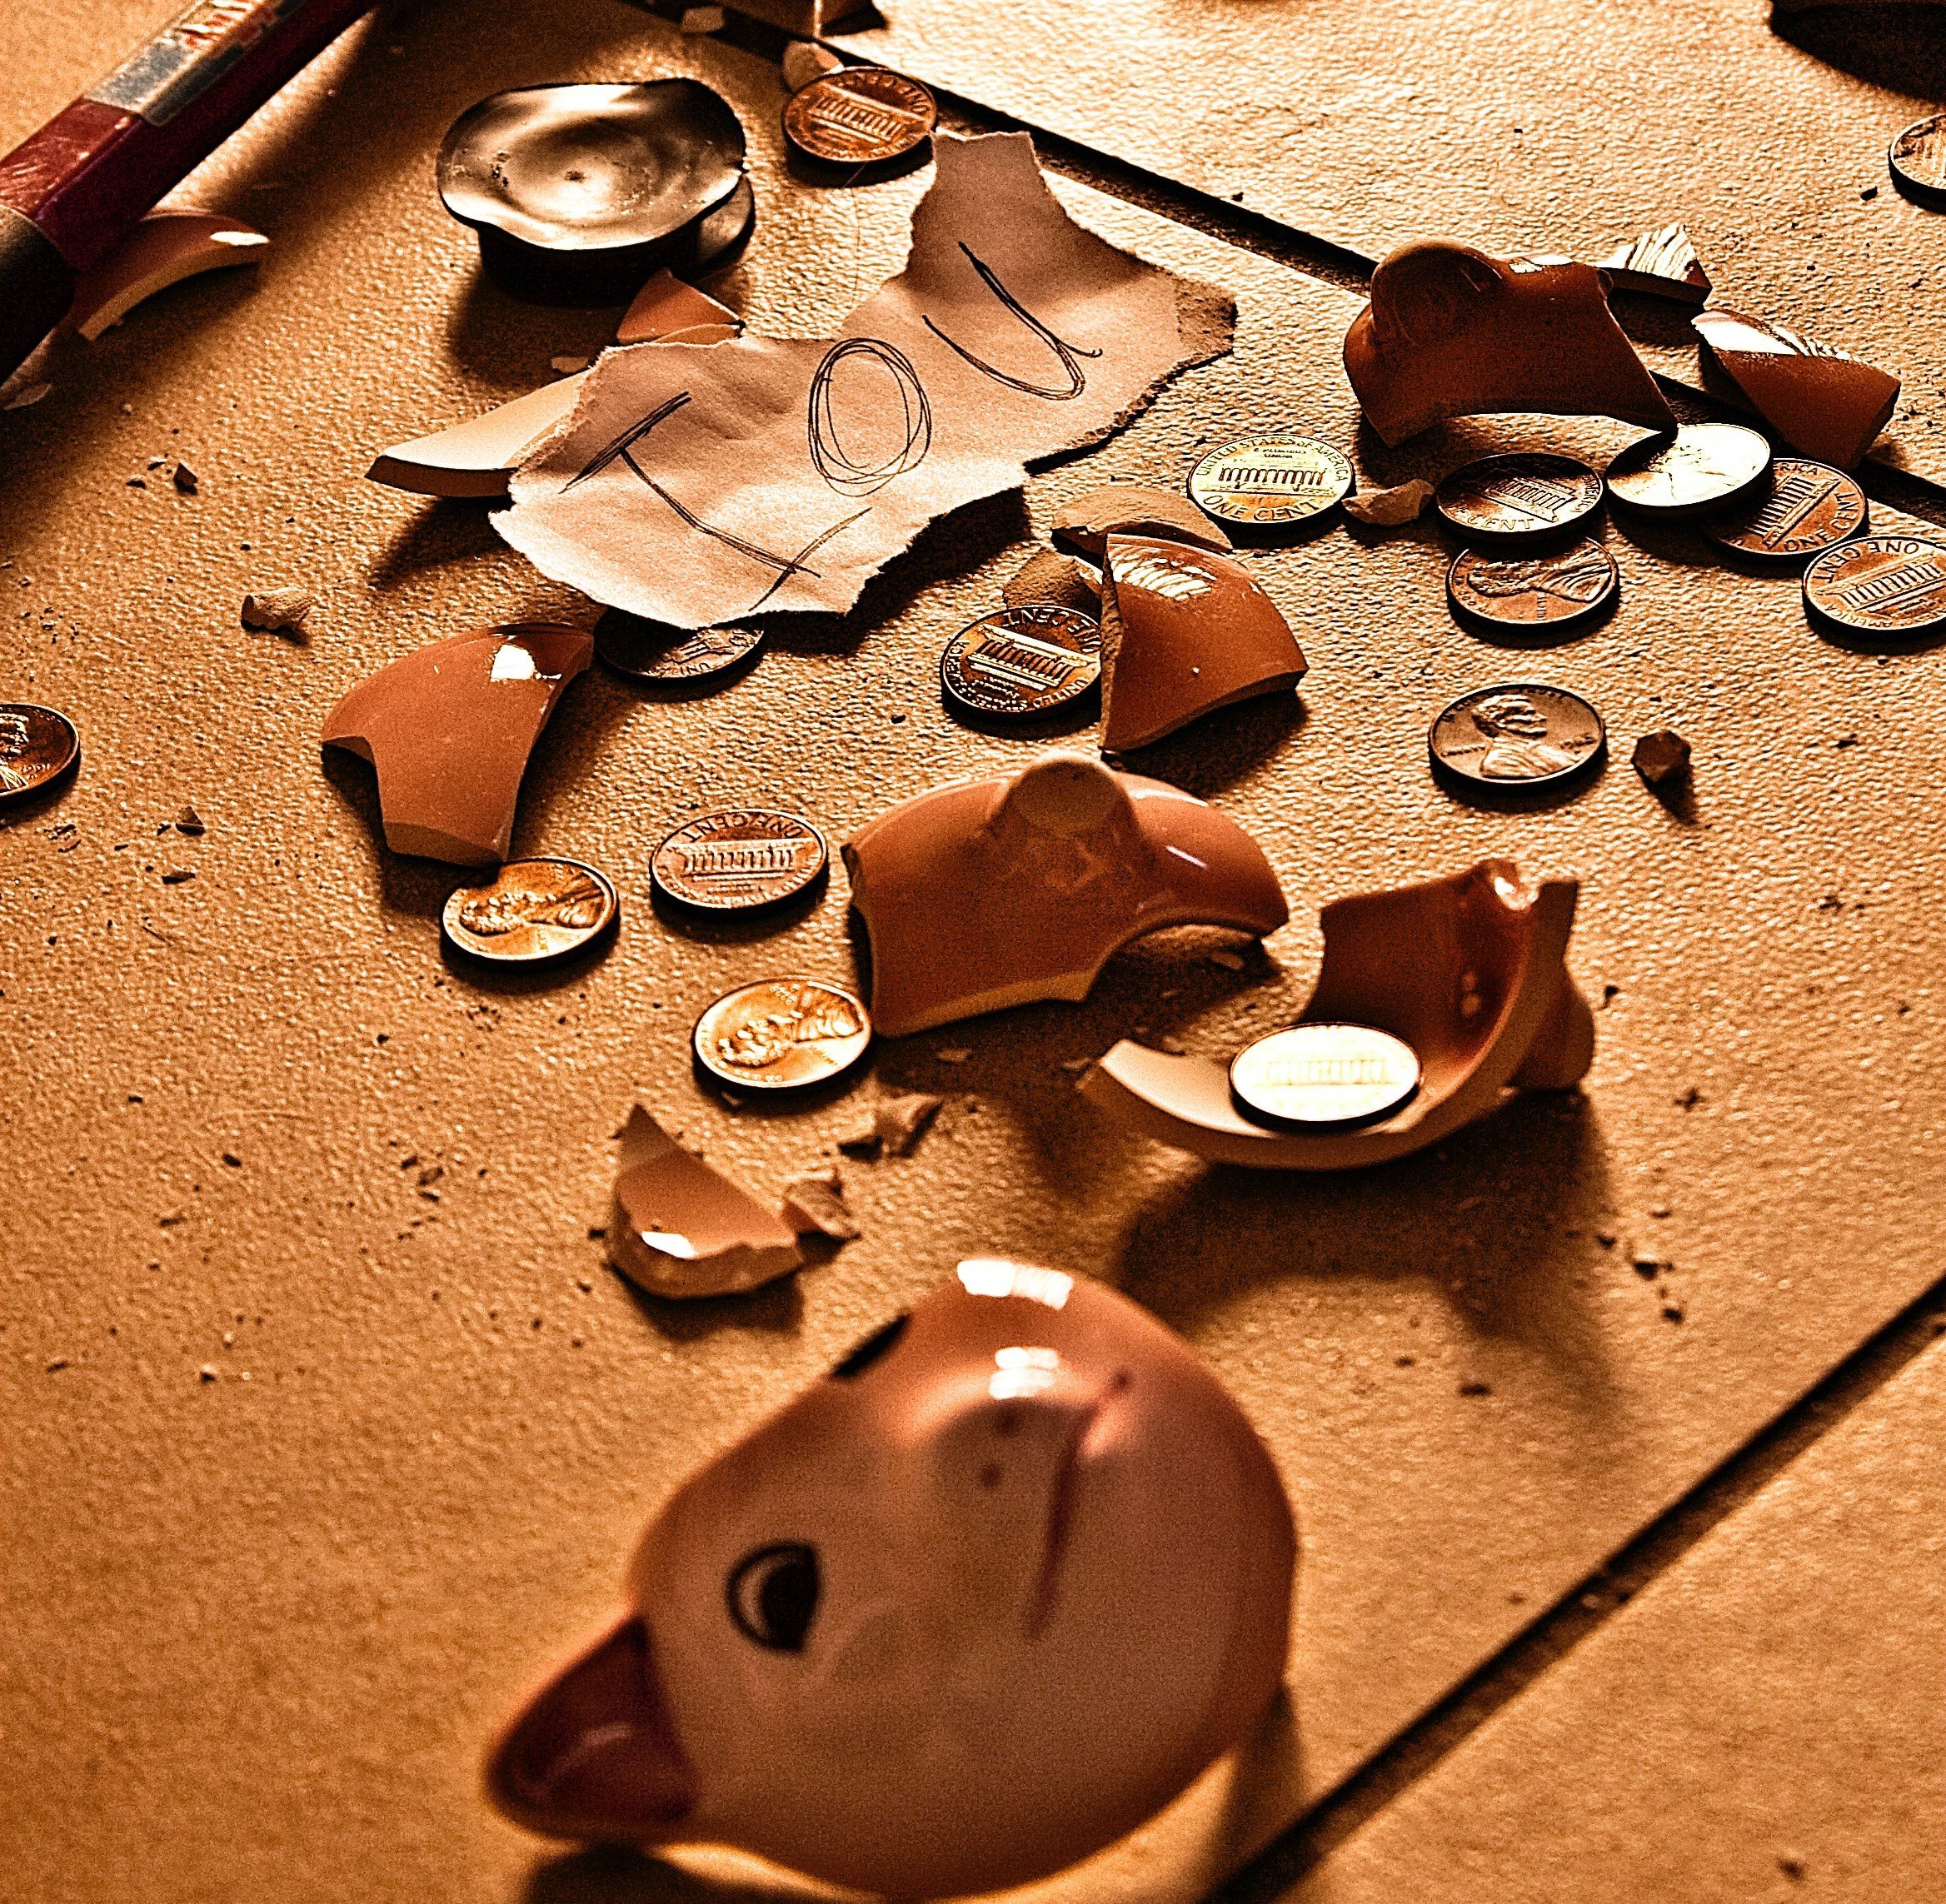 Una alcancía rota y varias monedas. | Foto: Pexels